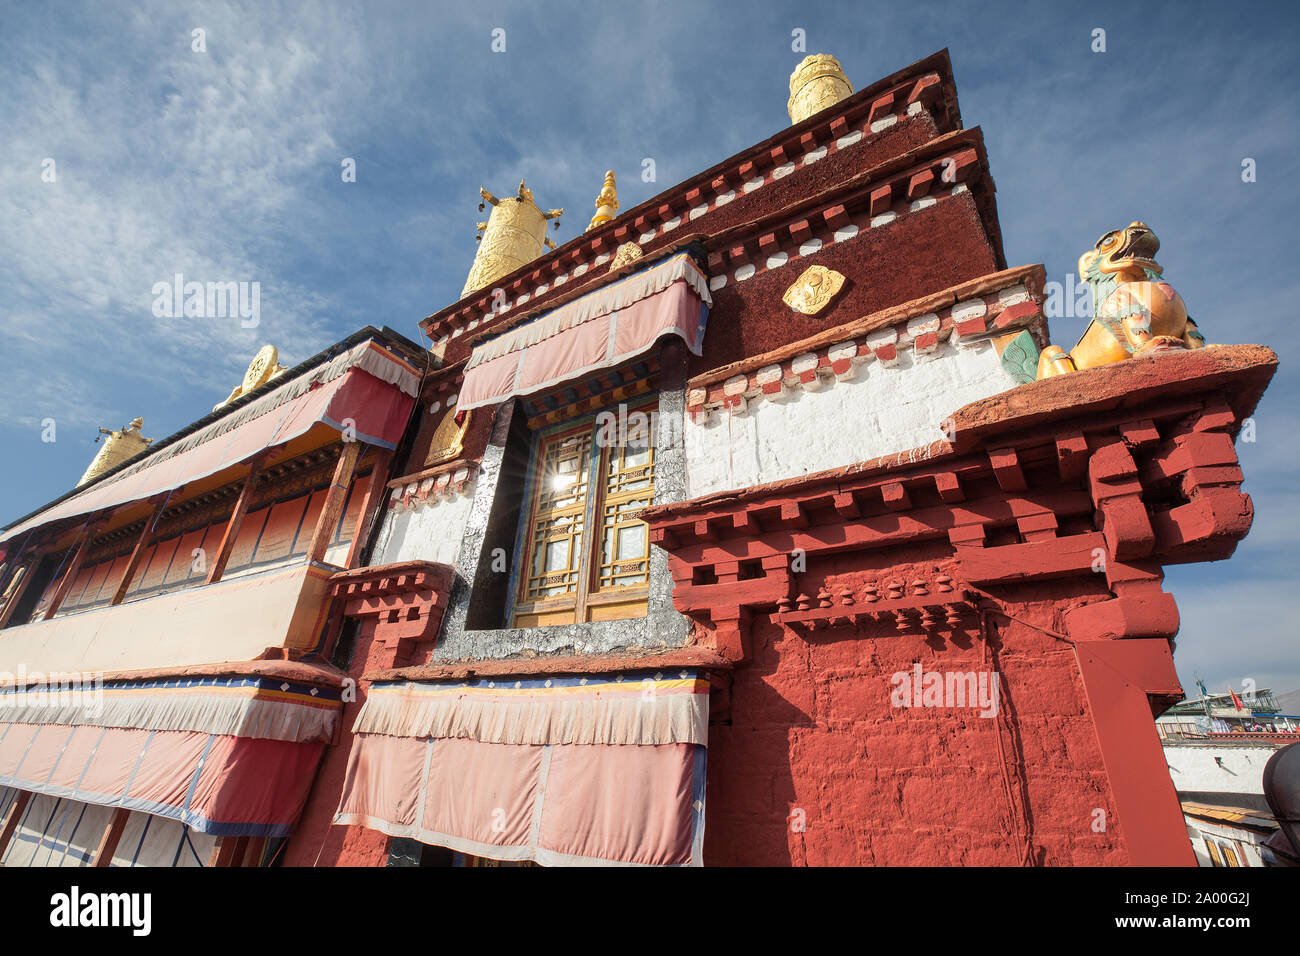 Ein 2019 Bild der Ramoche Tempel in Lhasa, Tibet. Stockfoto